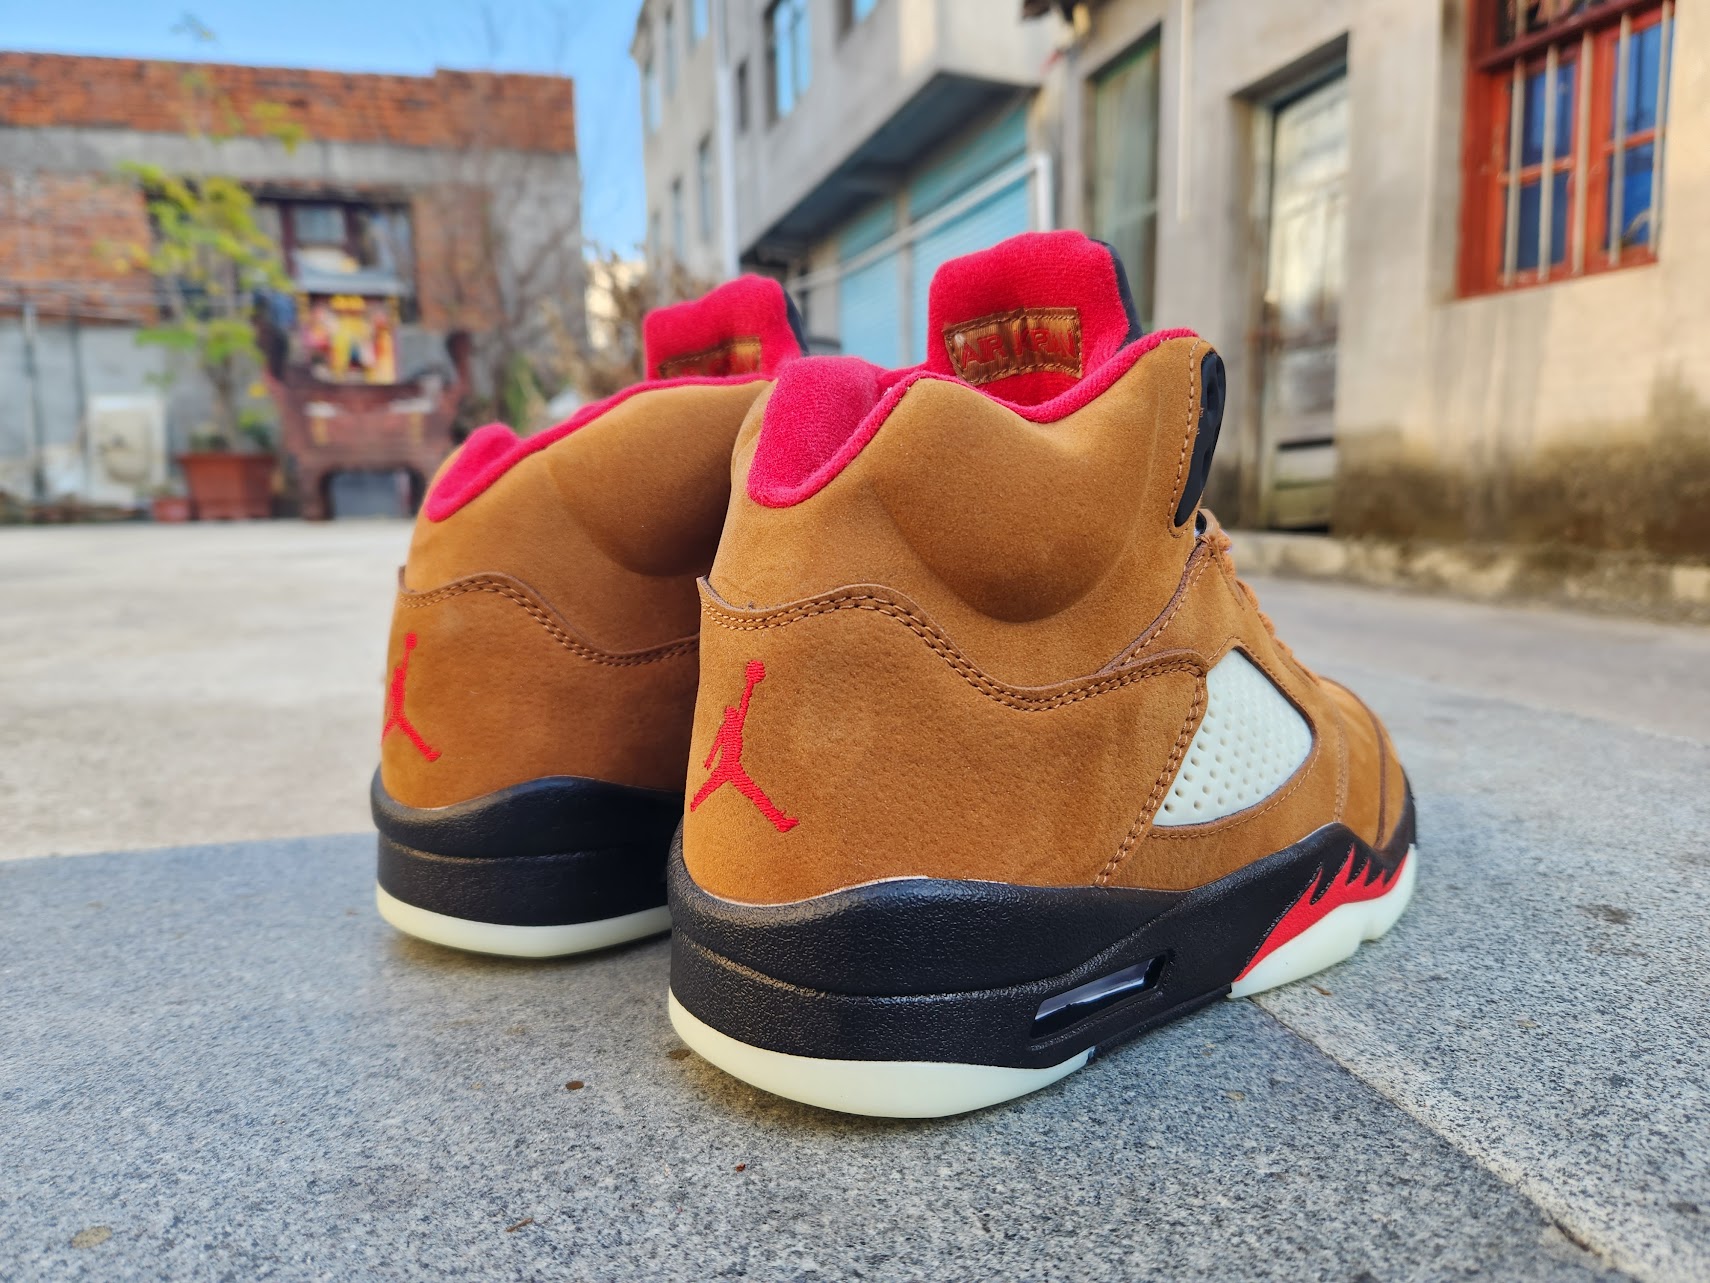 Air Jordan 5 Sneakers For Men in 275487, cheap Jordan5, only $65!